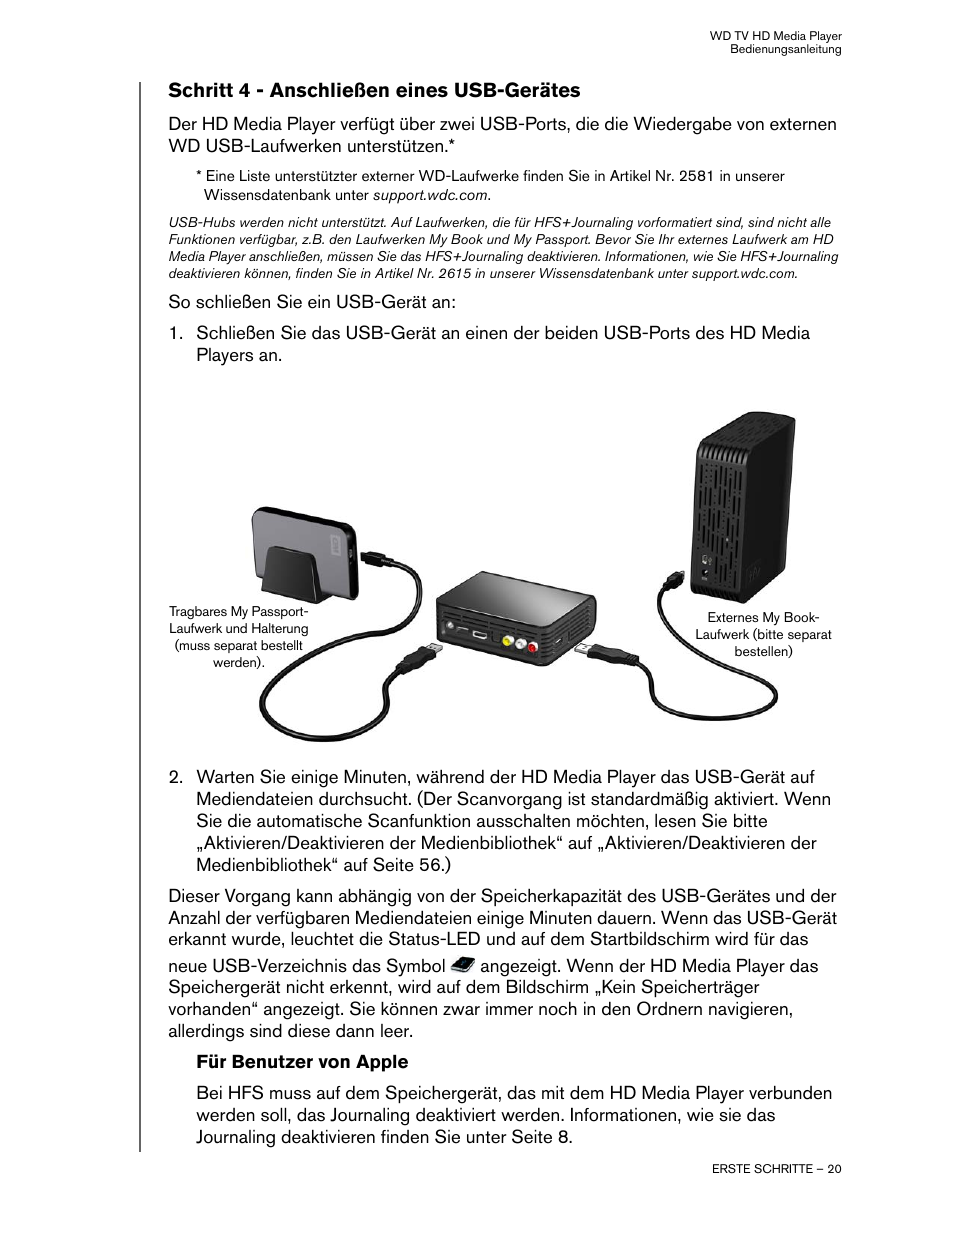 Schritt 4 - anschließen eines usb-gerätes | Western Digital WD TV HD Media Player (Gen 1) User Manual Benutzerhandbuch | Seite 23 / 88